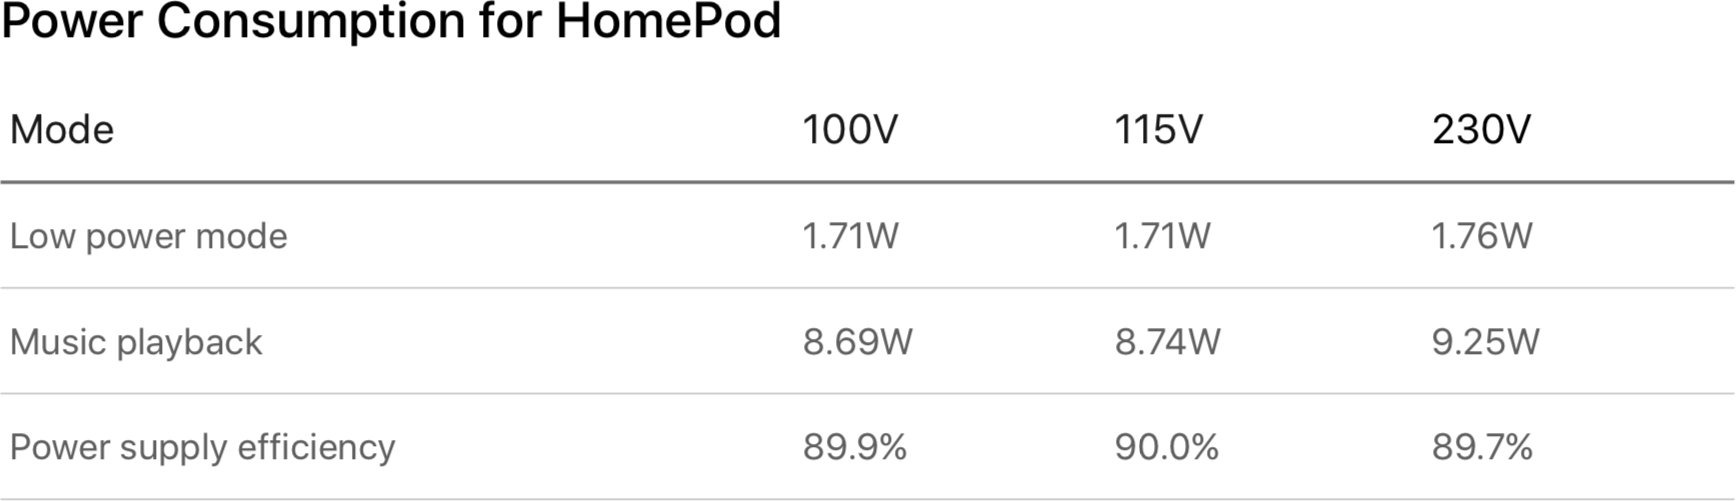 Tabela de consumo de energia do HomePod